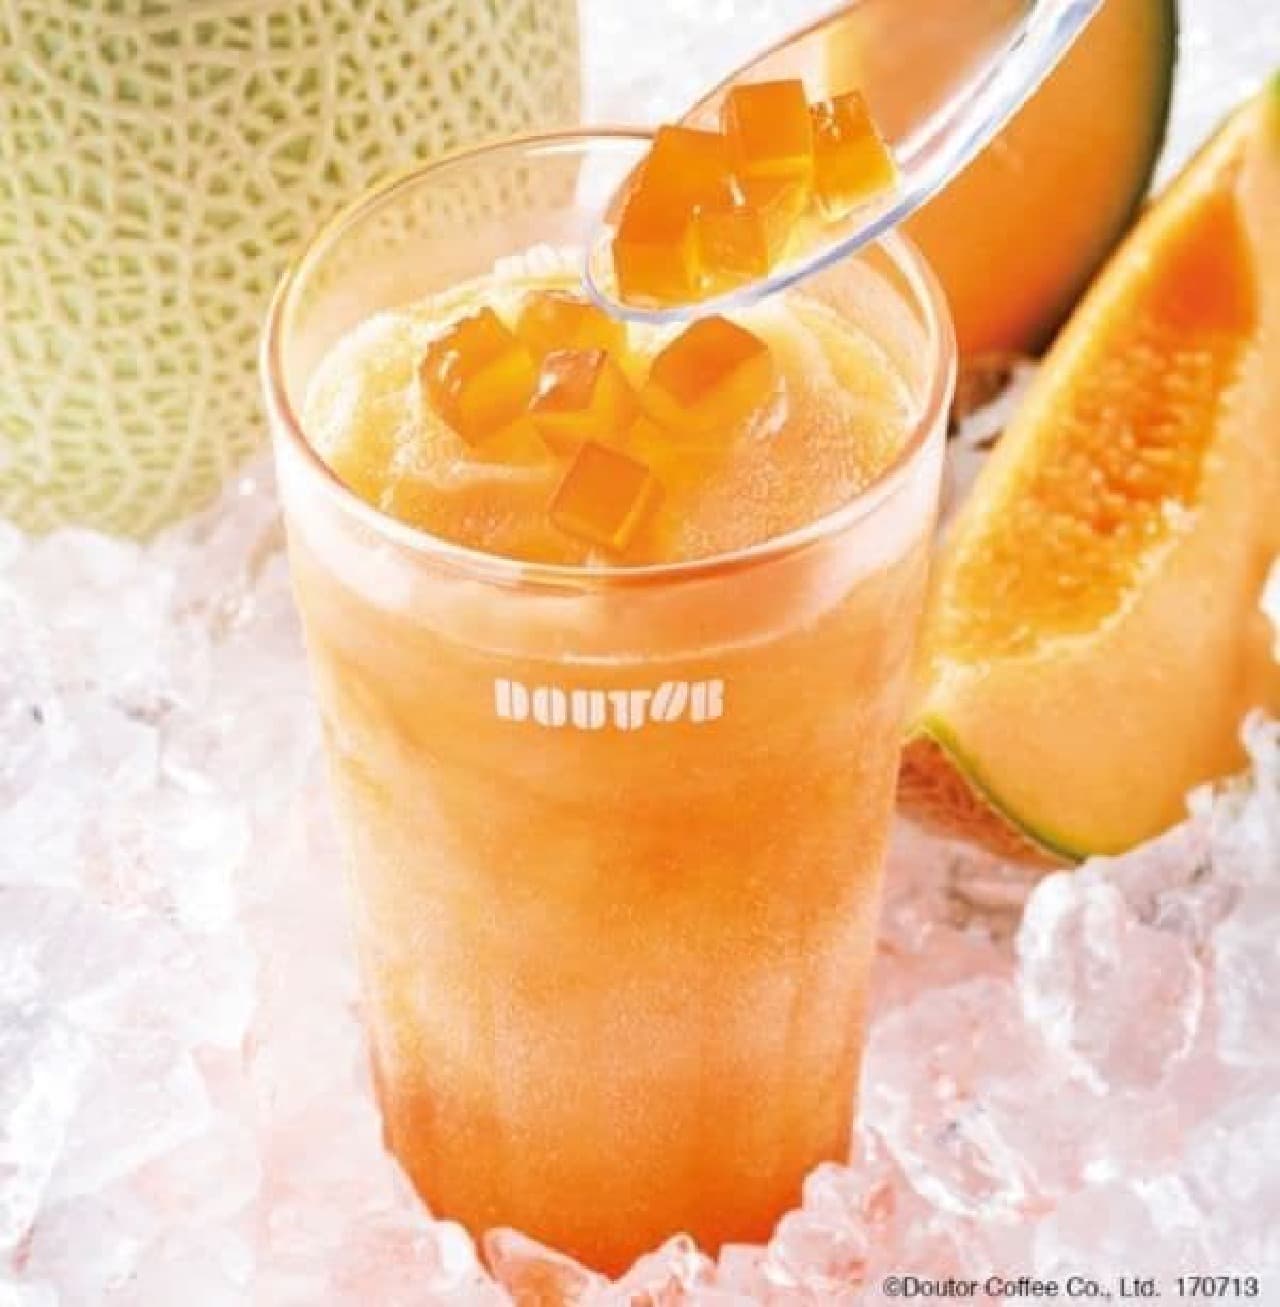 Hokkaido Melon Frozen is a frozen drink that uses red meat melon juice from Hokkaido.